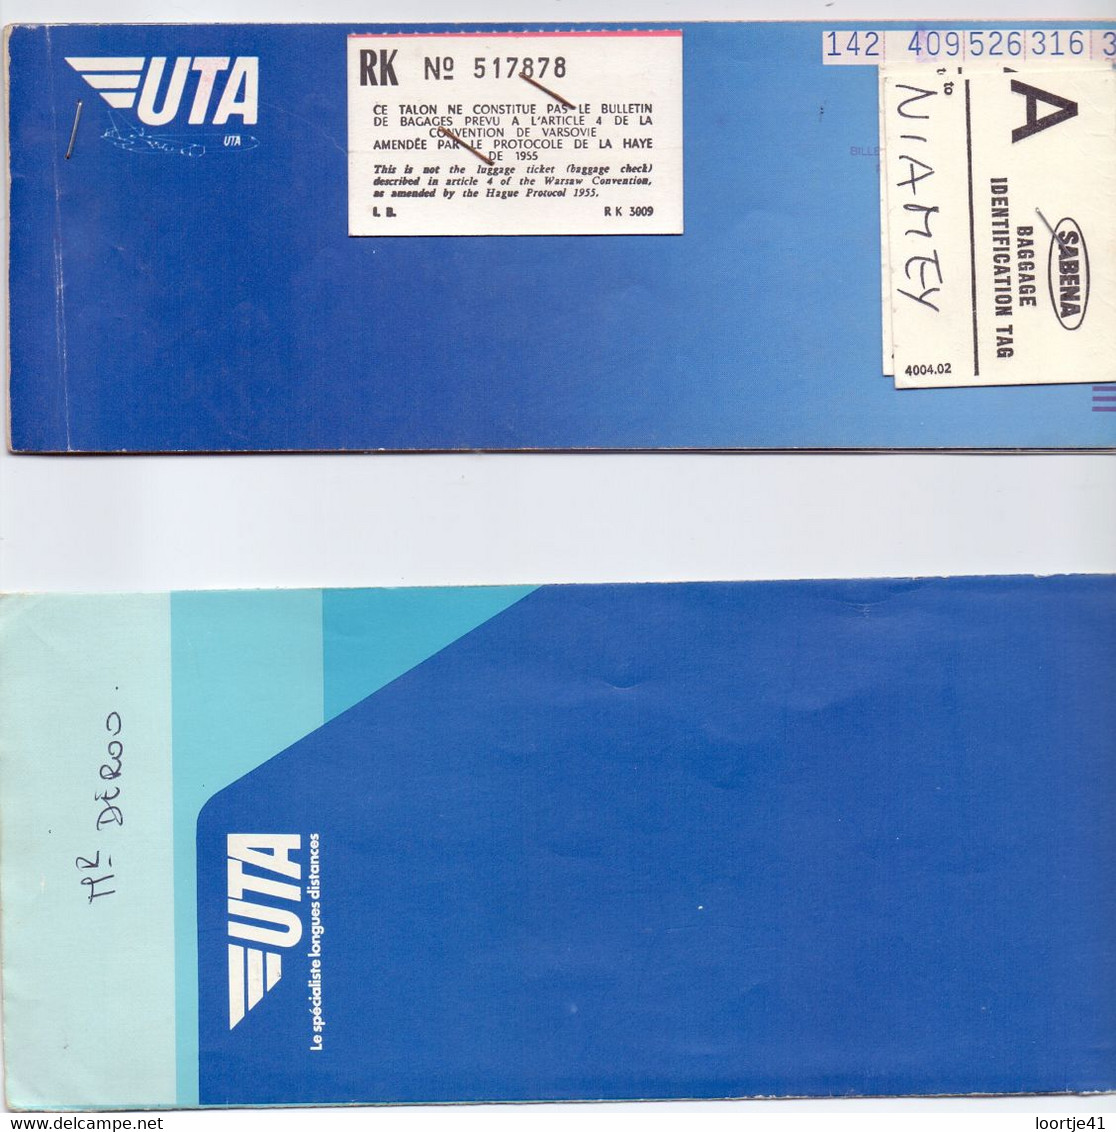 Ticket Luchtvaart Airplane - UTA  - 1978 - Biglietti